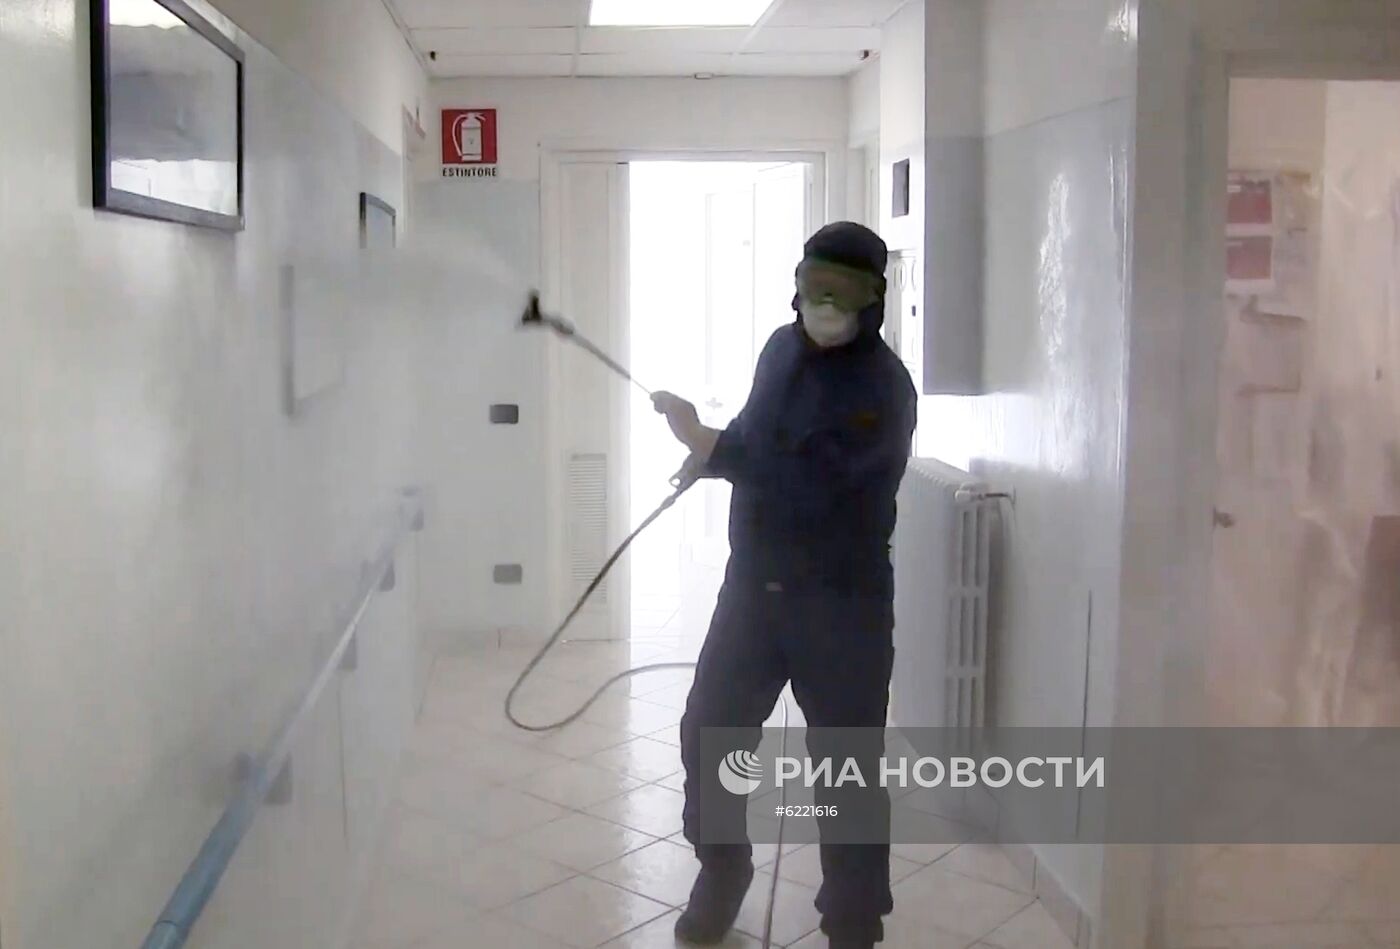 Военные специалисты РФ провели дезинфекцию в домах для пожилых людей в Италии